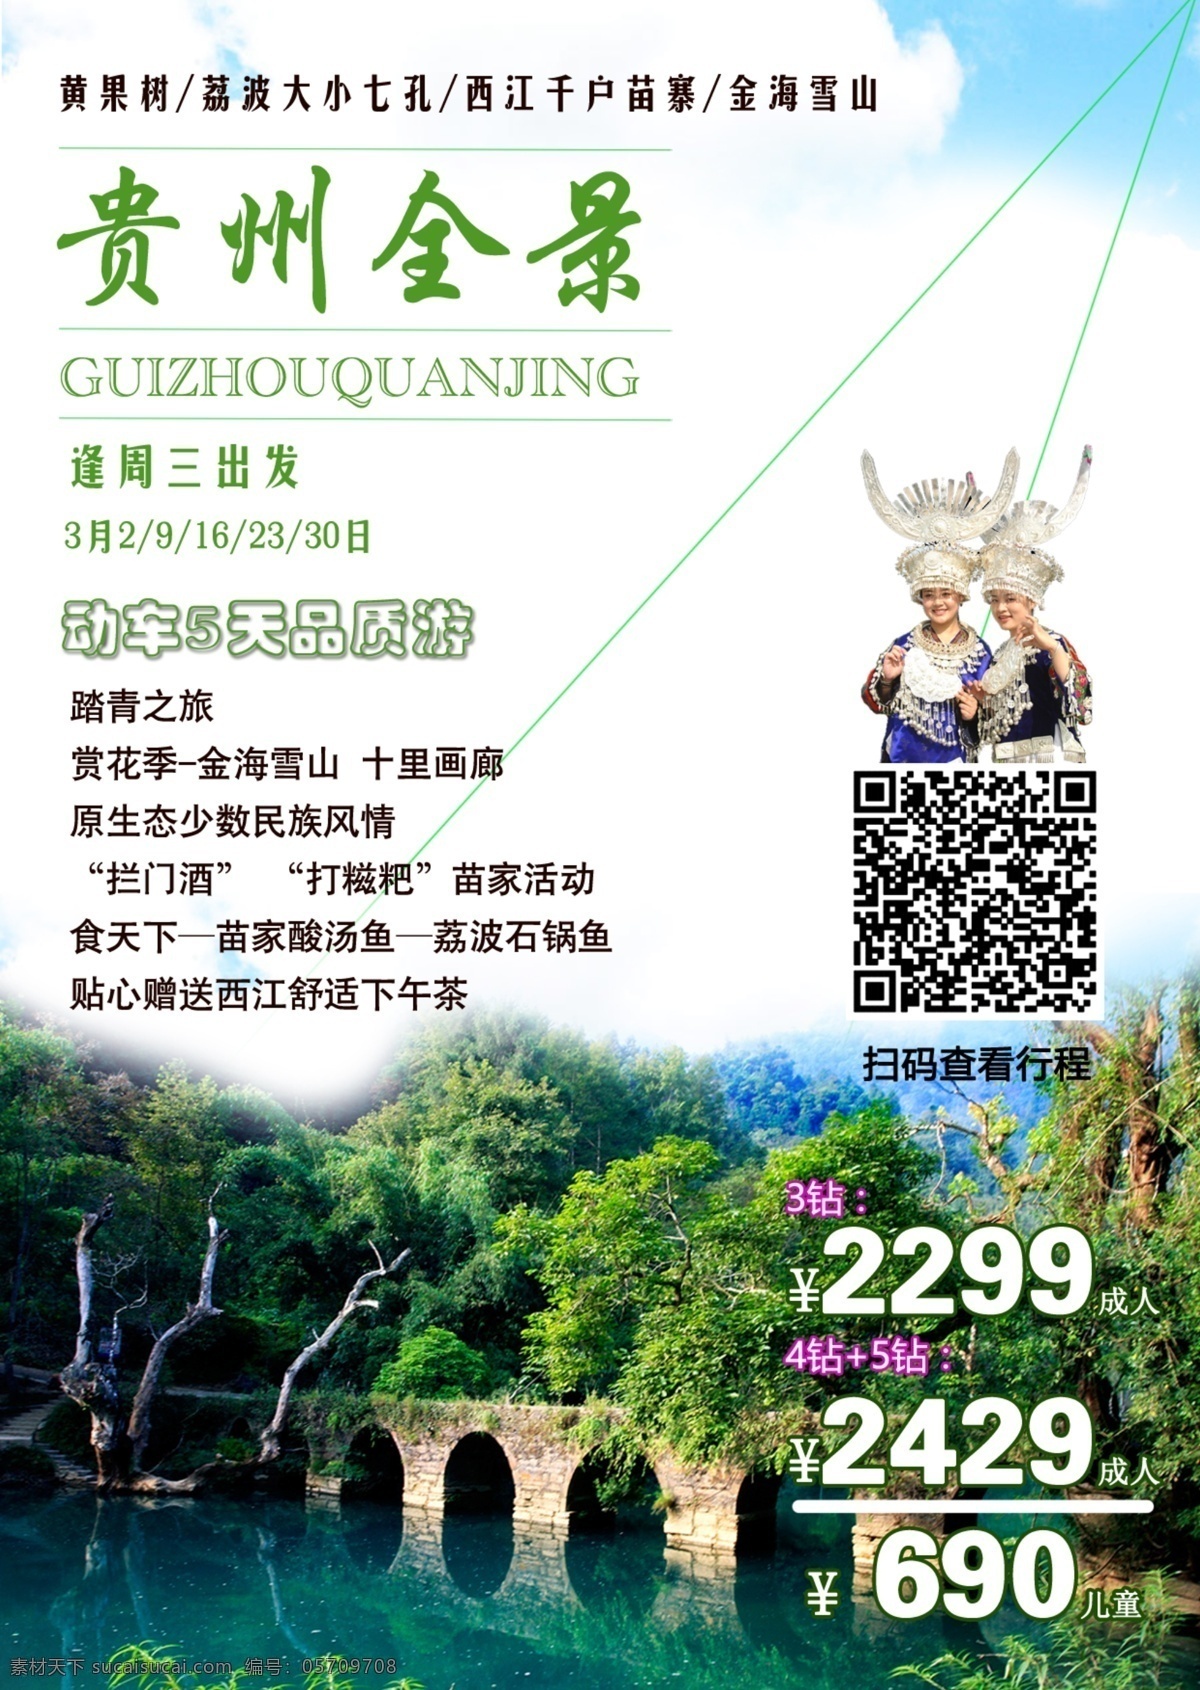 贵州风采 贵州 旅游 大小七孔 民族风 旅游产品 荔波 宣传